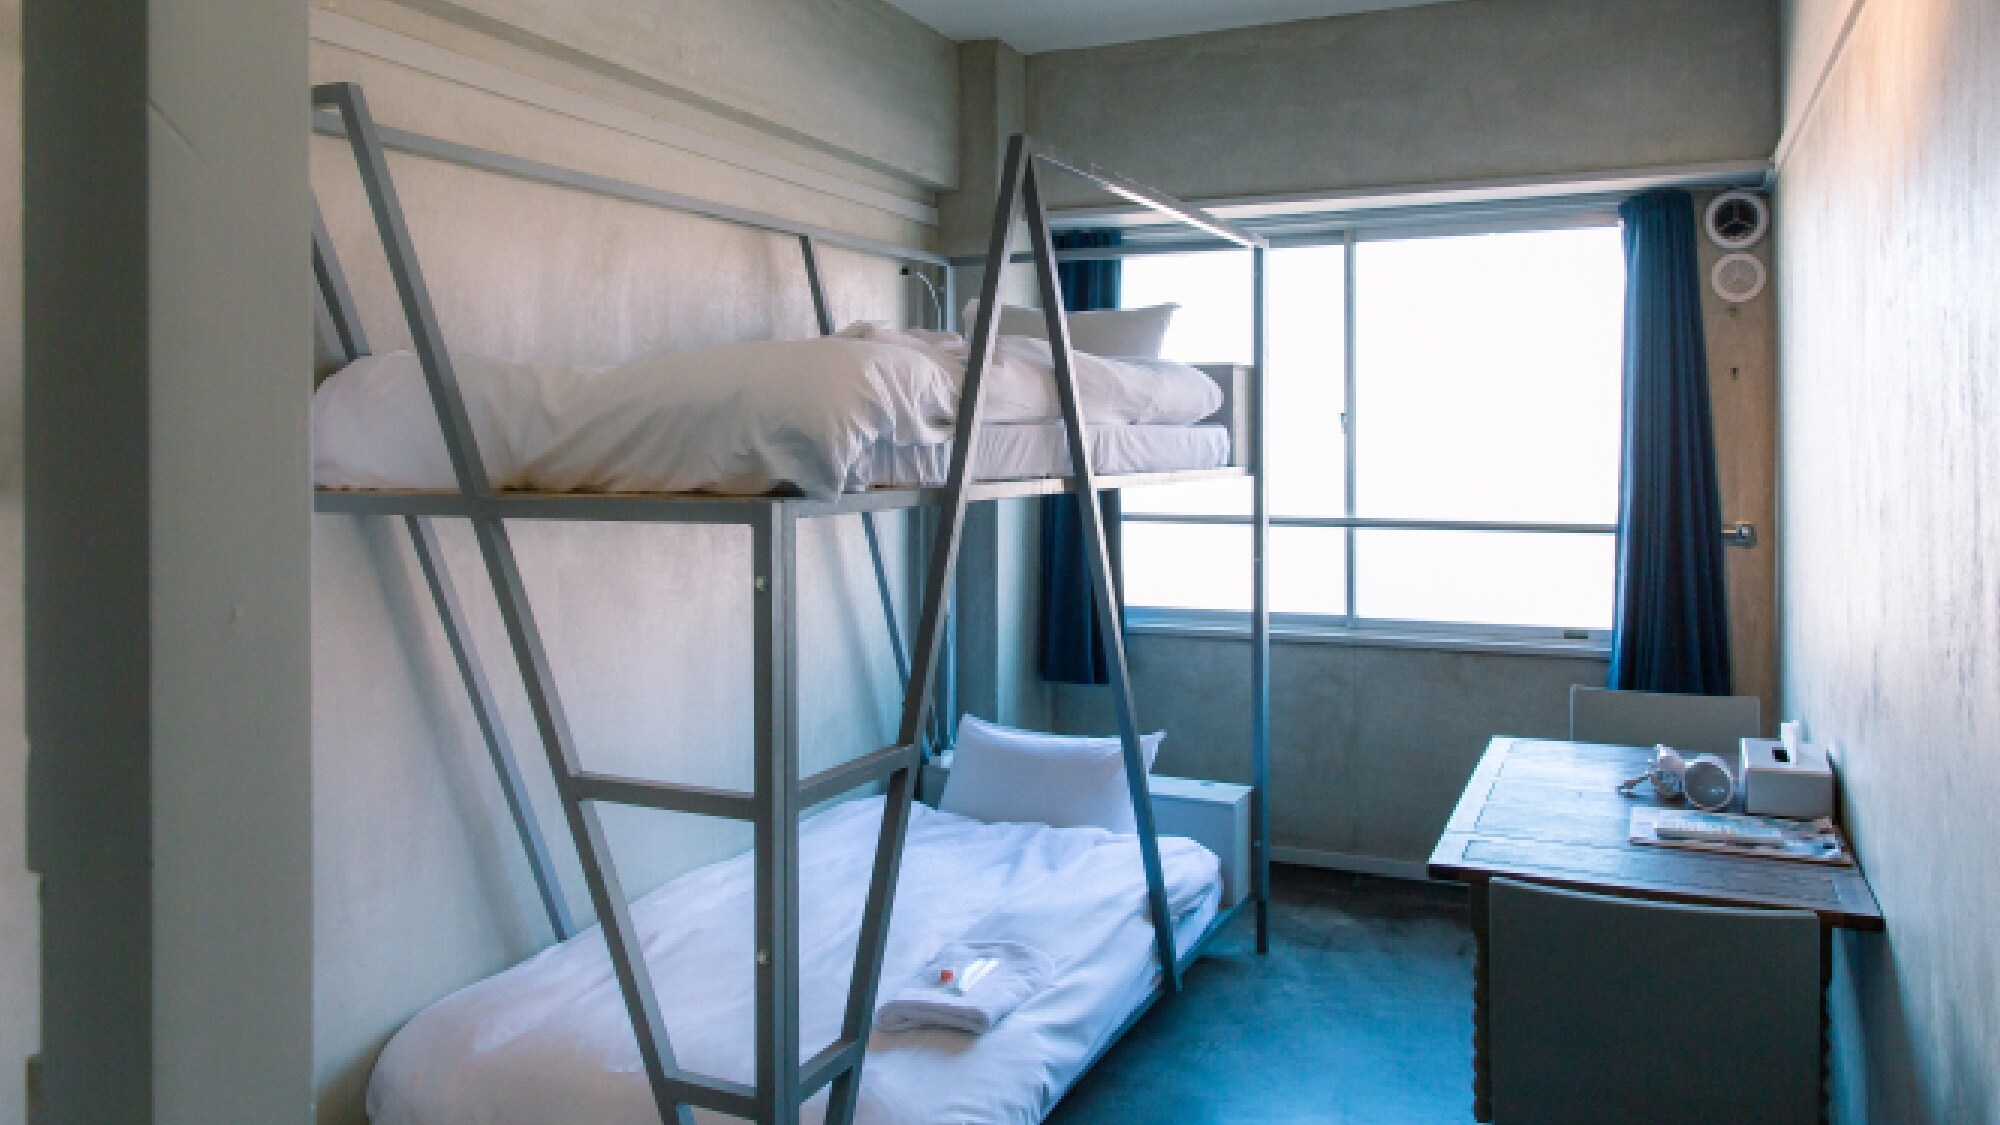 ・[ห้อง/เตียงสองชั้นส่วนตัว] ห้องสามารถใช้กับเตียงสองชั้นได้อย่างกว้างขวาง